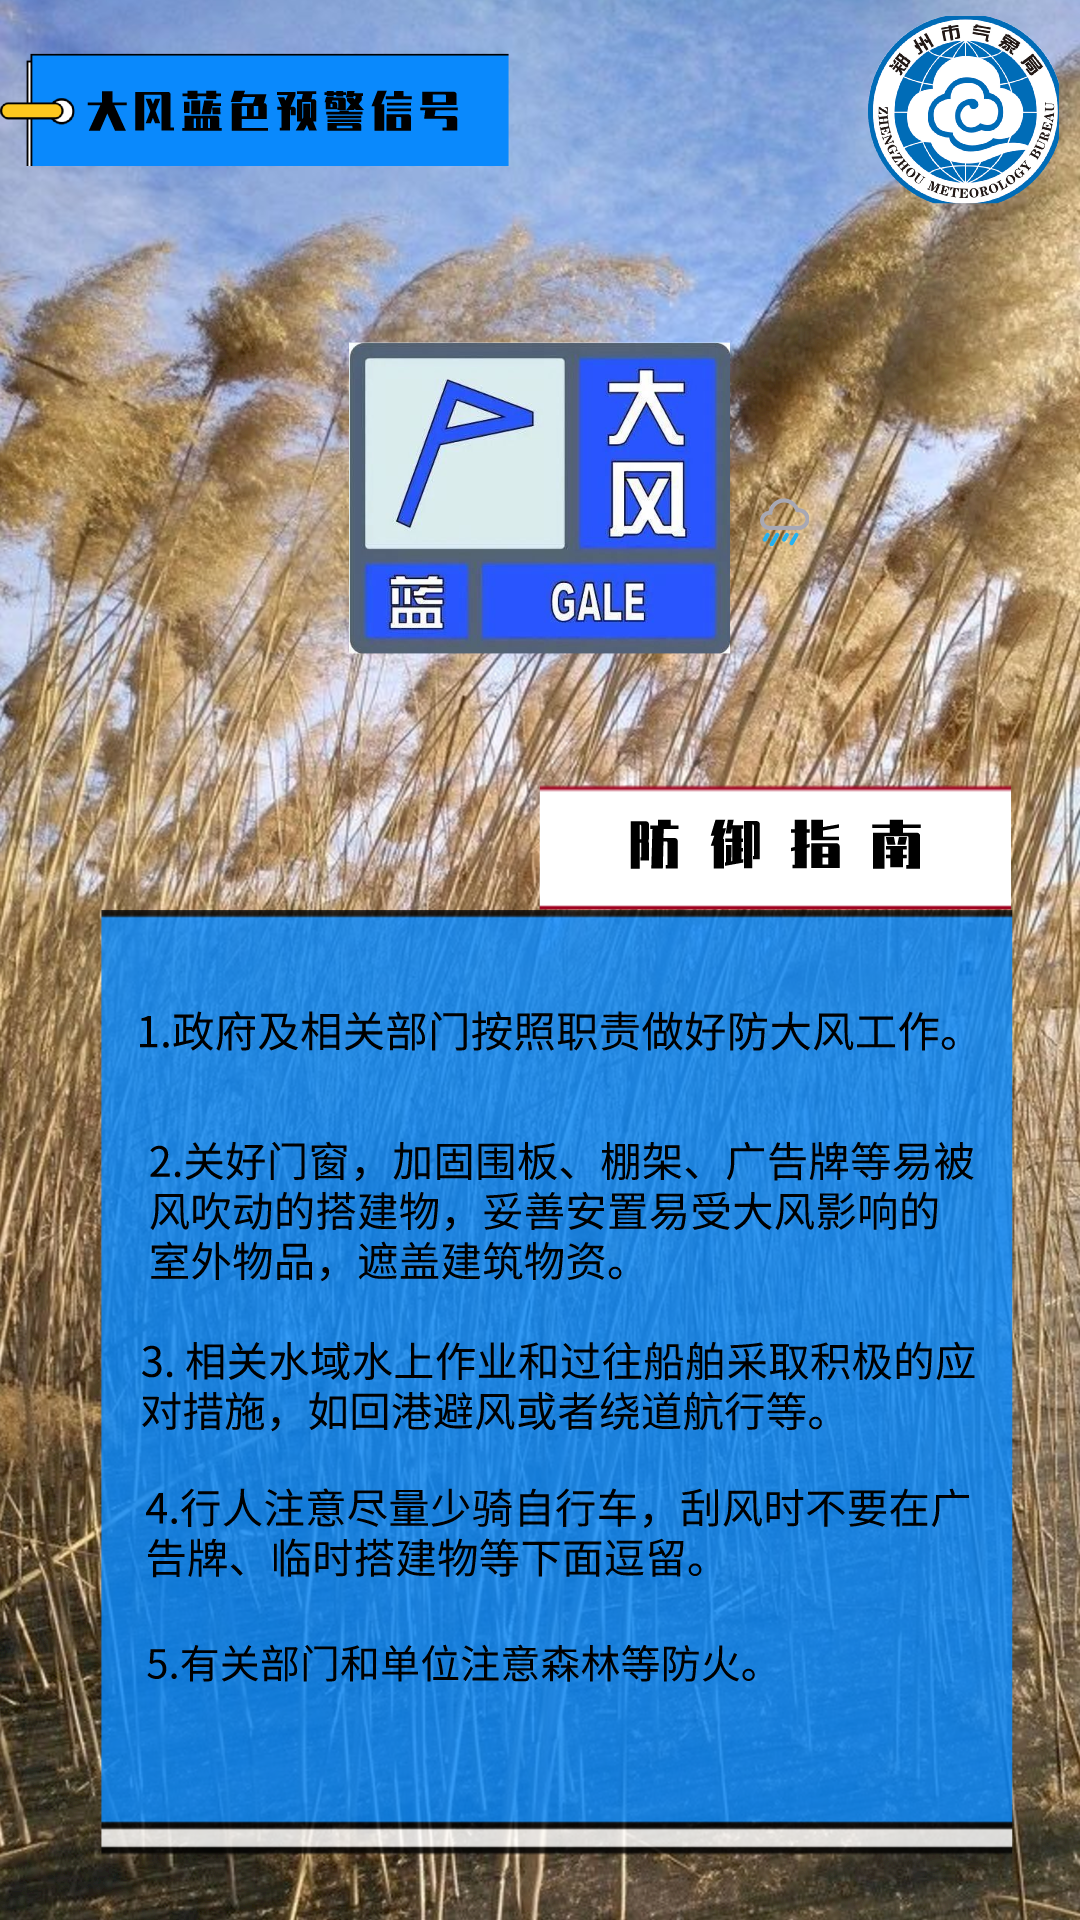 注意防范郑州市气象台刚刚发布大风蓝色预警